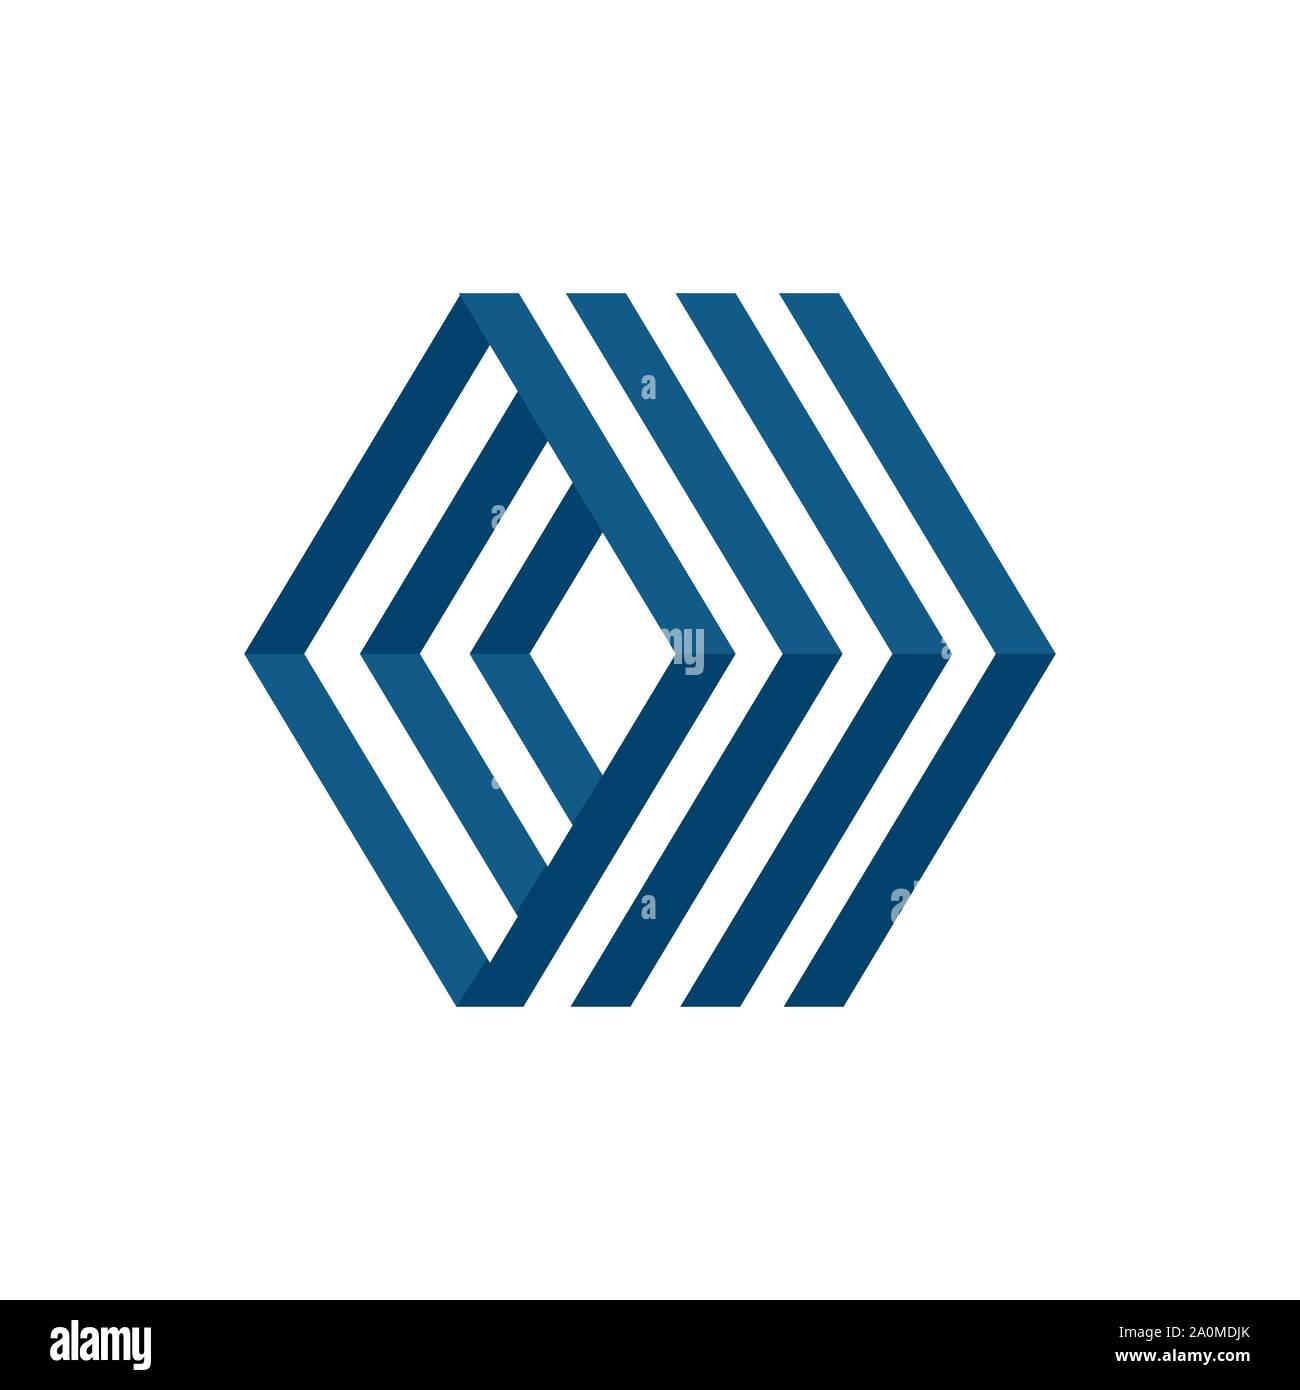 Style moderne design logo hexagonal géométrique de l'élément vecteur icône Illustration de Vecteur